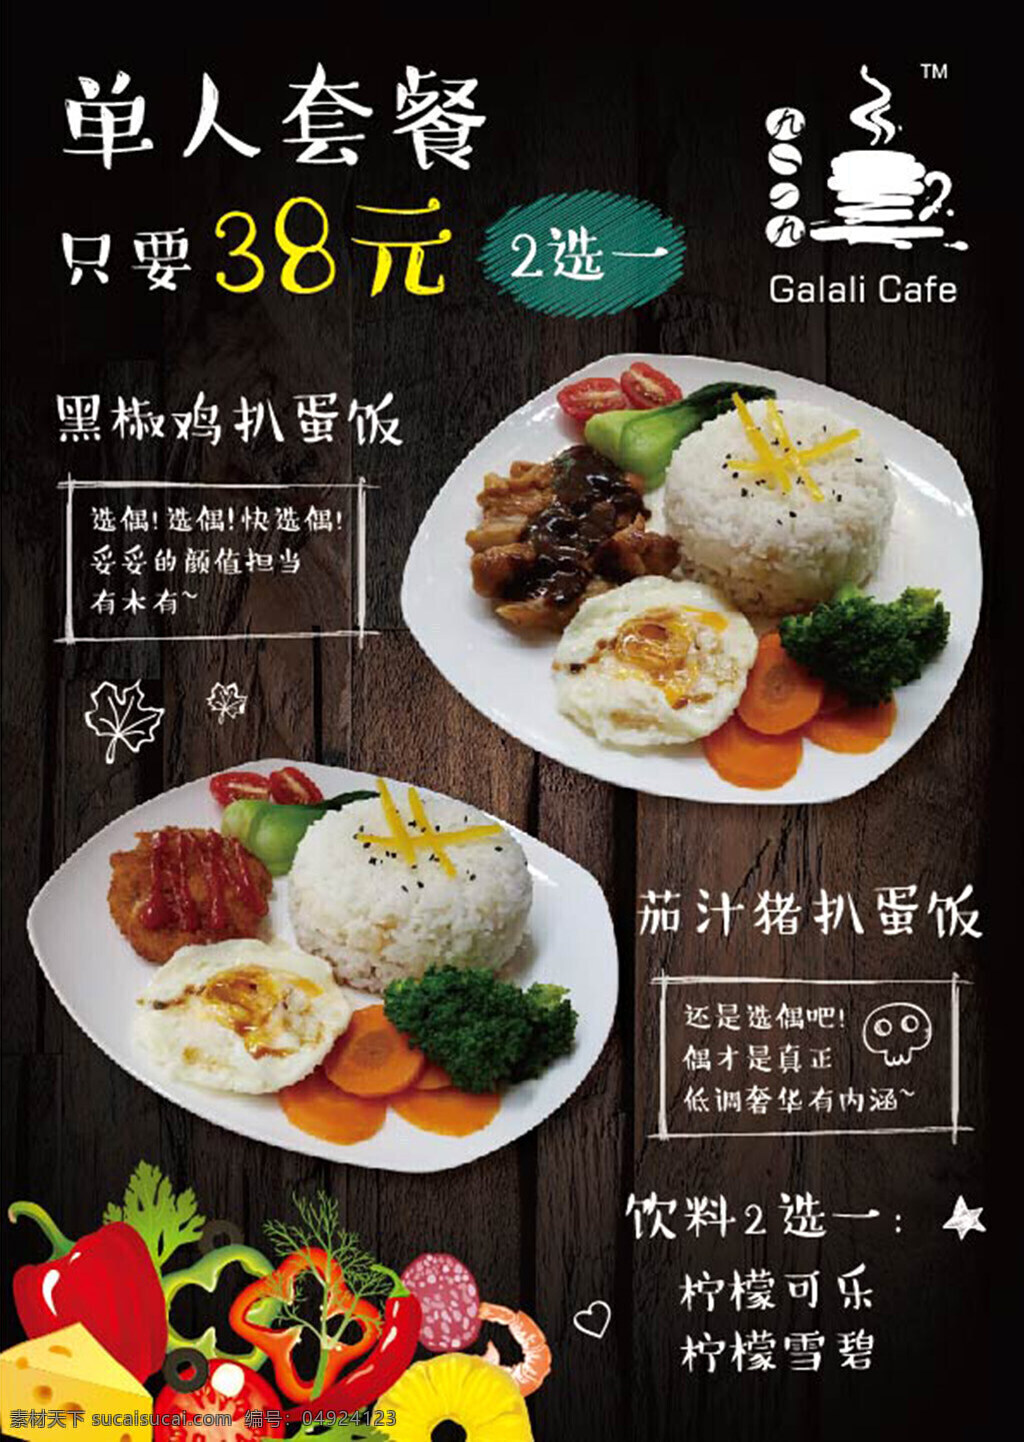 茶 餐厅 单人 套餐 菜单 海报 西餐厅菜单 单人套餐 茶餐厅 咖啡馆餐牌 复古搞怪风格 黑色